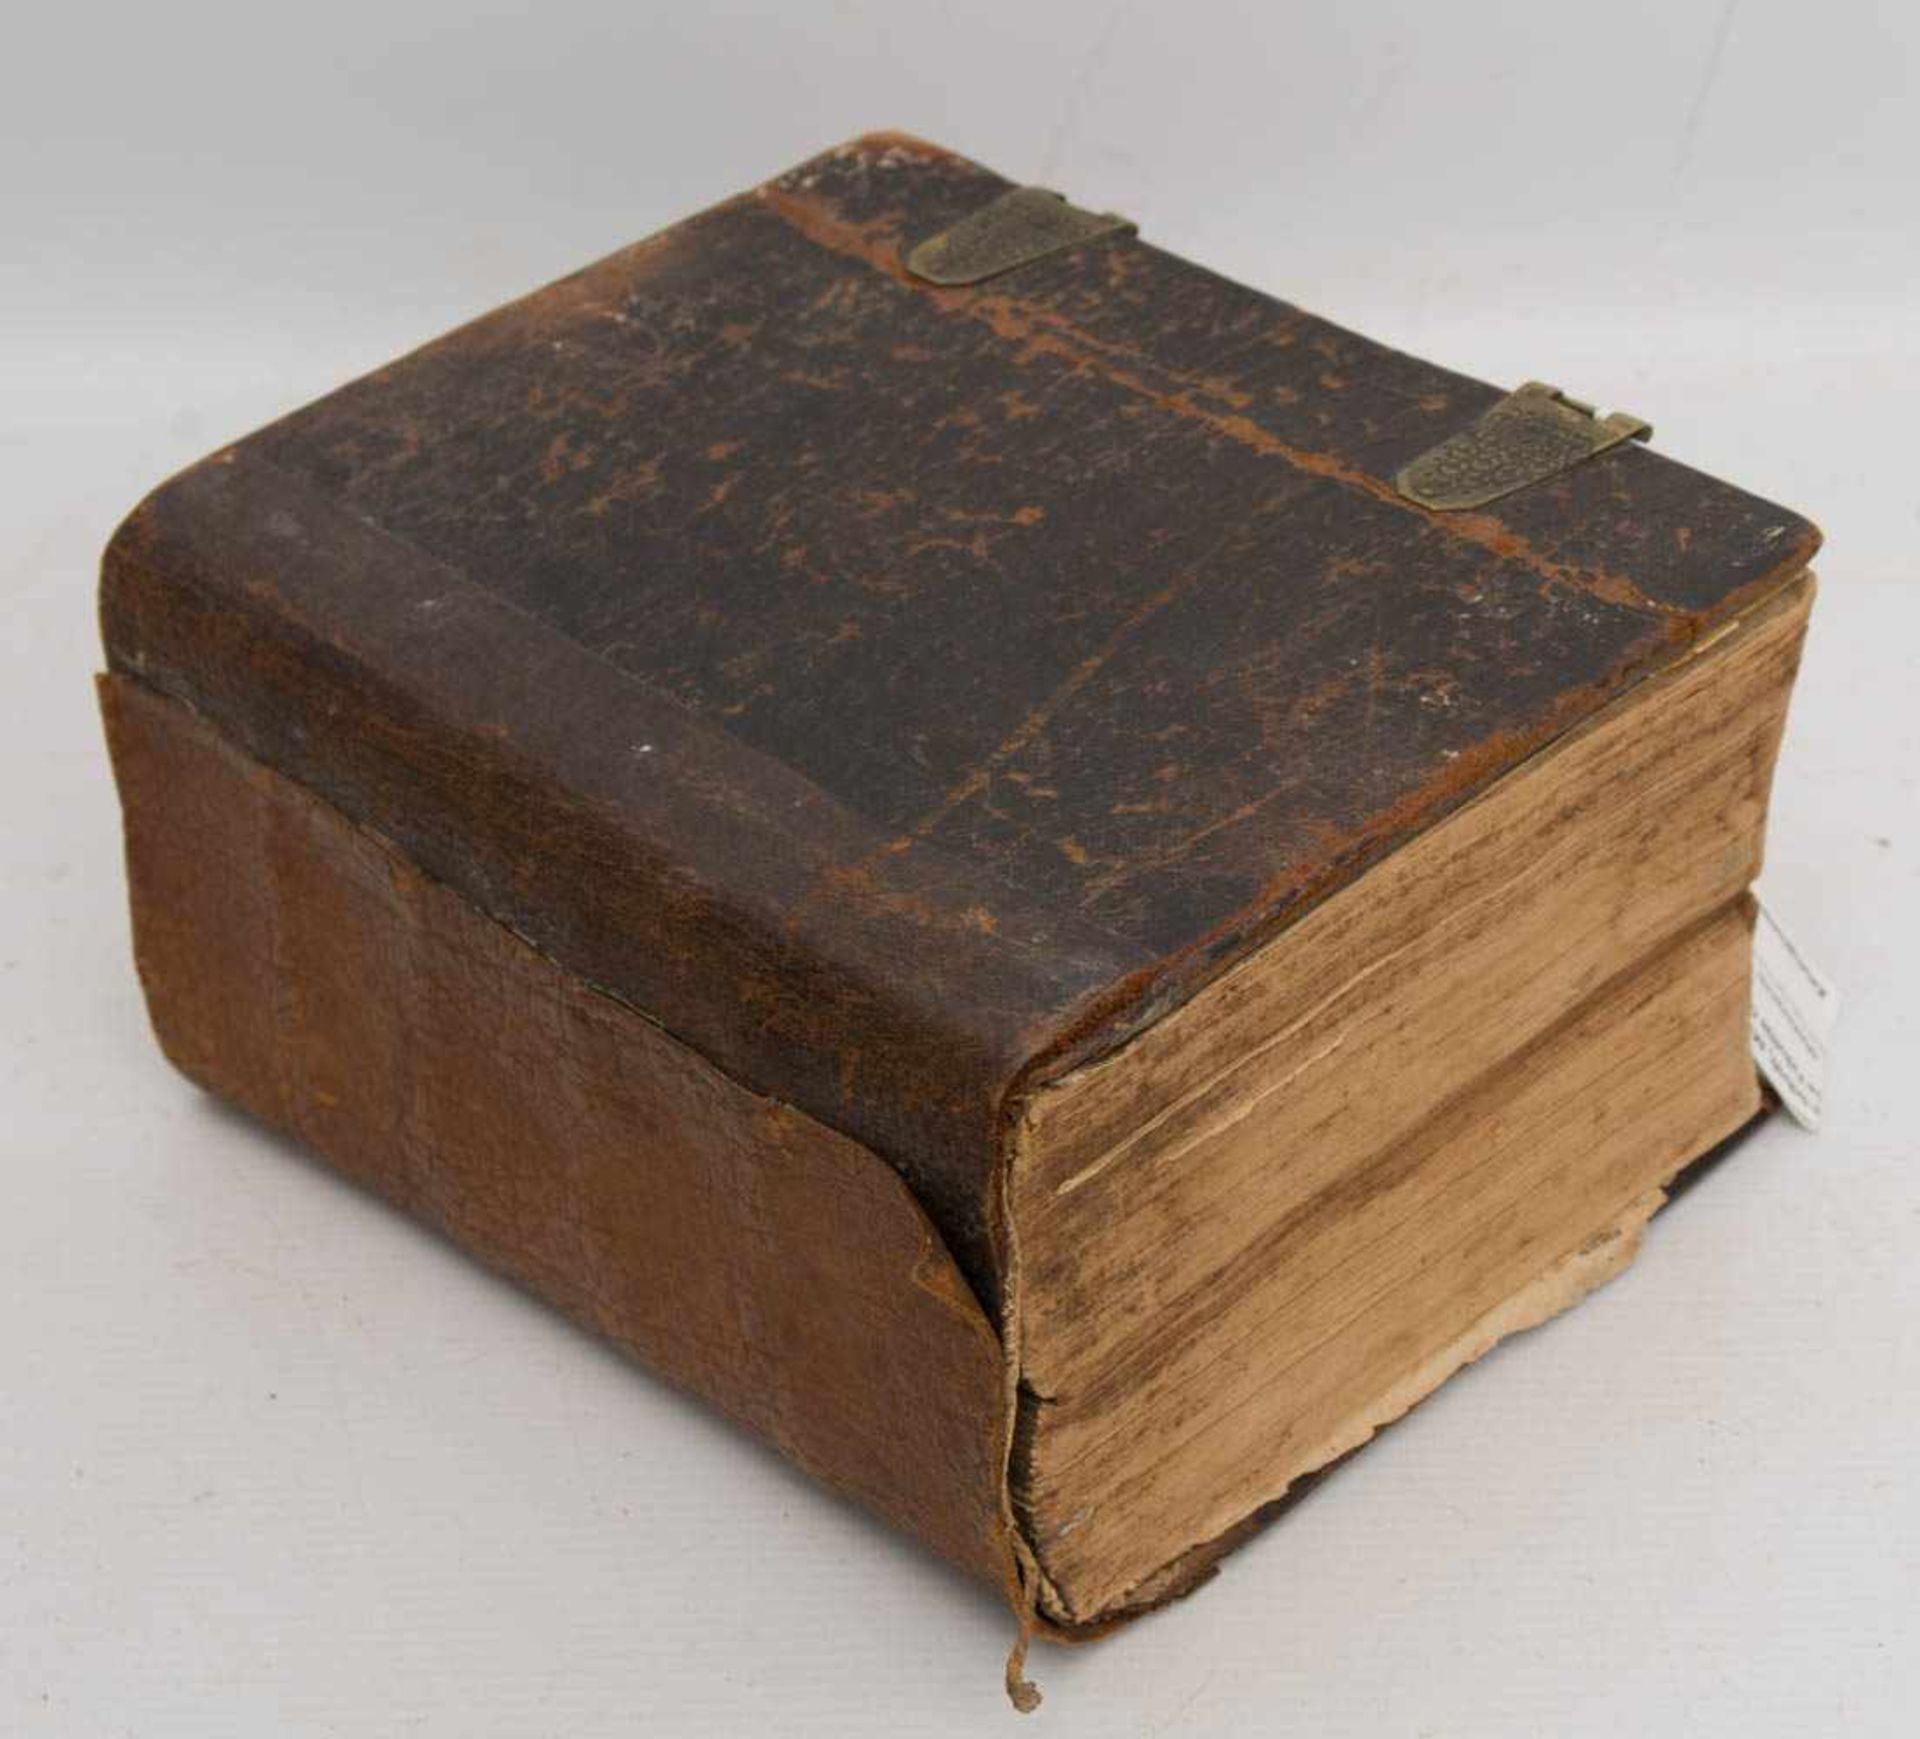 BIBEL, Die ganze heilige Schrift, Martin Luther, hg. Theologische Fakultät Leipzig, 1708.Altes und